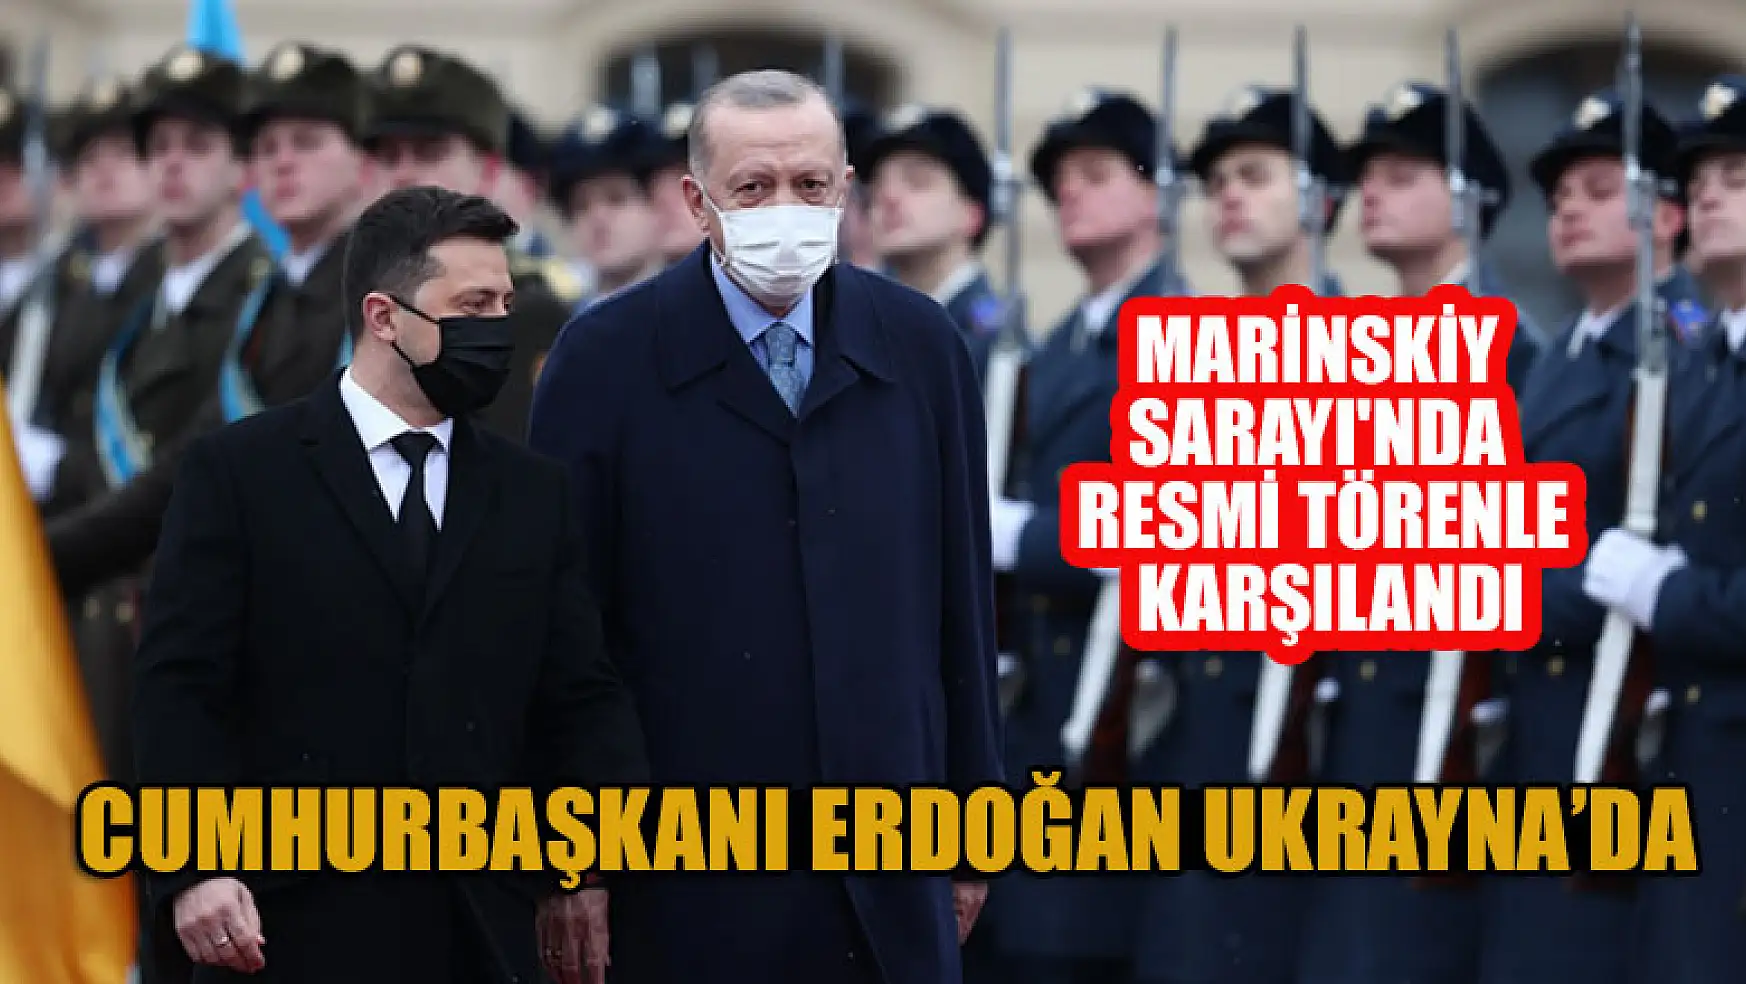 Cumhurbaşkanı Erdoğan Marinskiy Sarayı'nda resmi törenle karşılandı